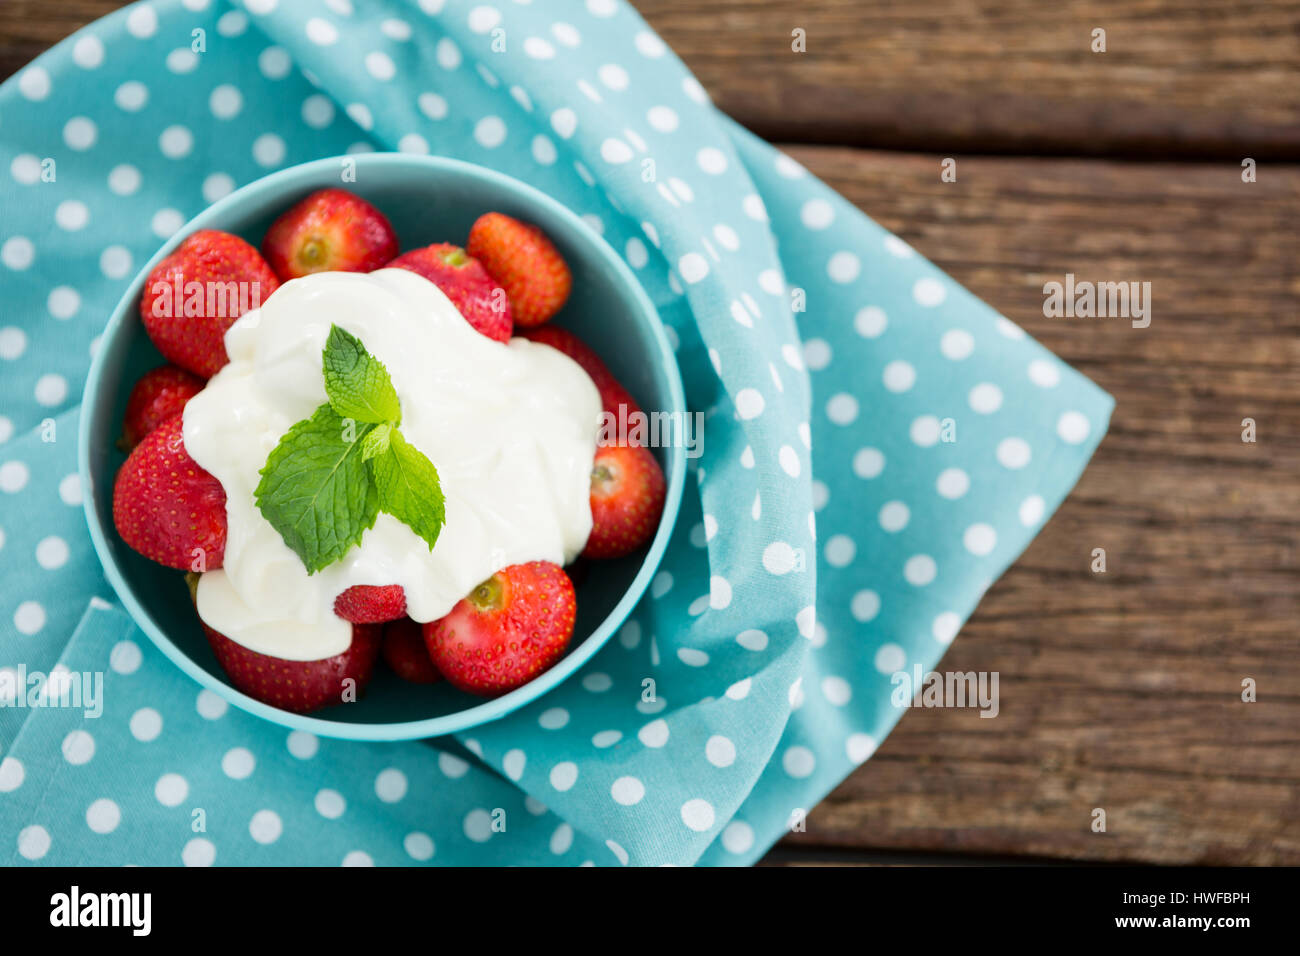 Passage de fraises fraîches avec de la crème dans un bol sur la table en bois Banque D'Images